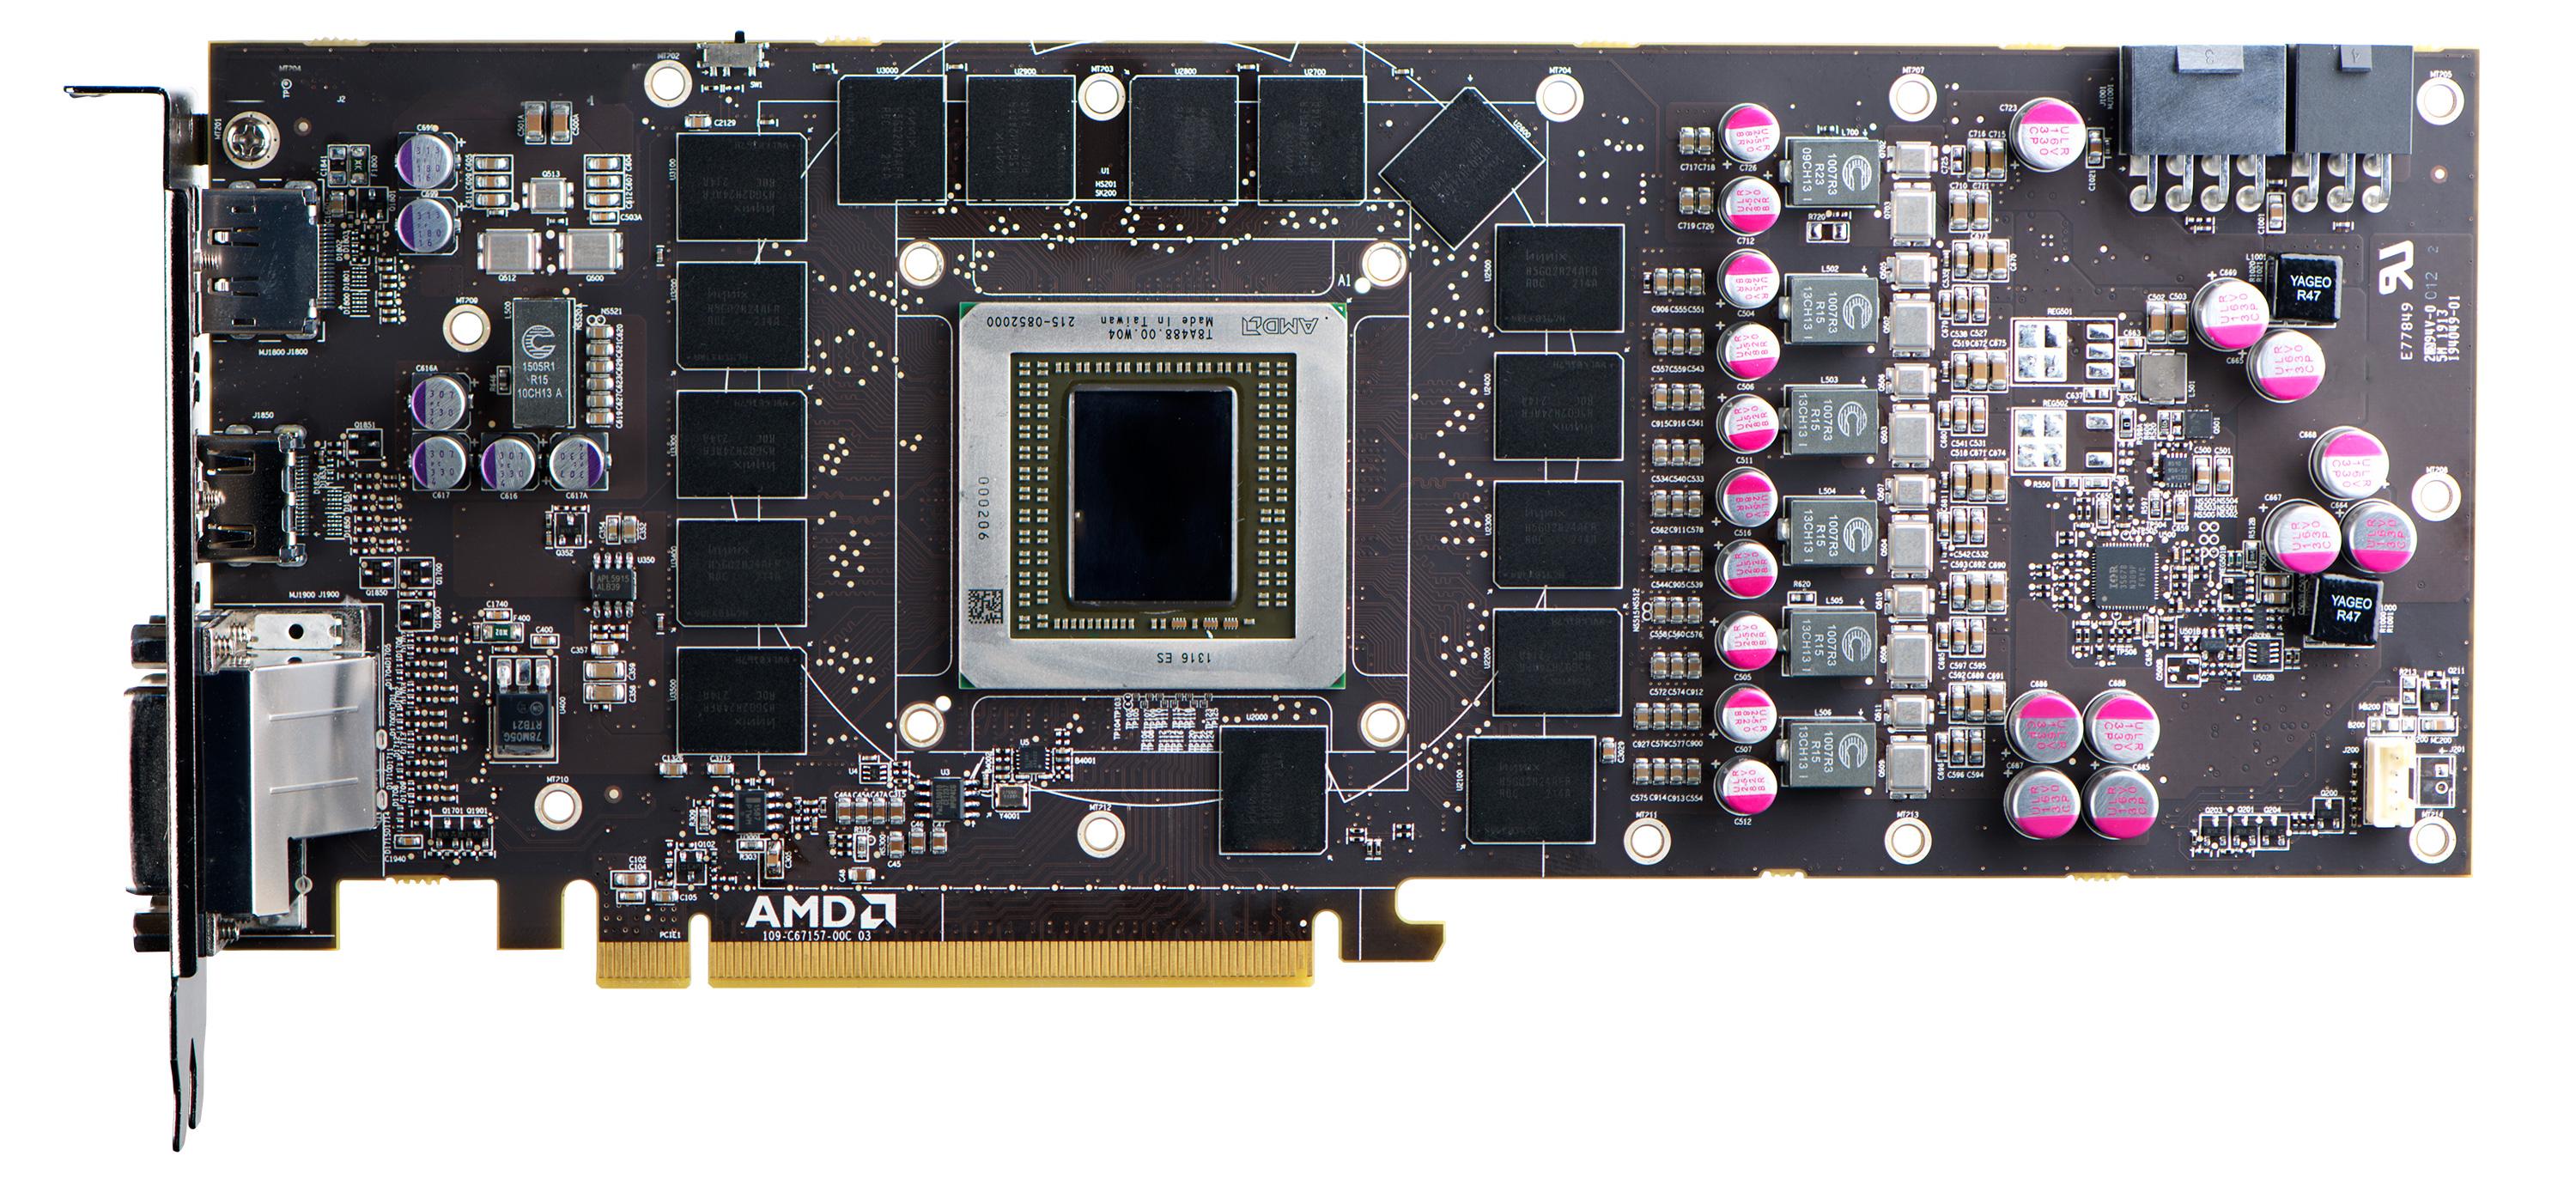 Med en dedikert lydprosessor på kretskortet skal de nye Radeon-modellene være langt bedre egnet til å tilrettelegge for innlevelse i spill.Foto: AMD